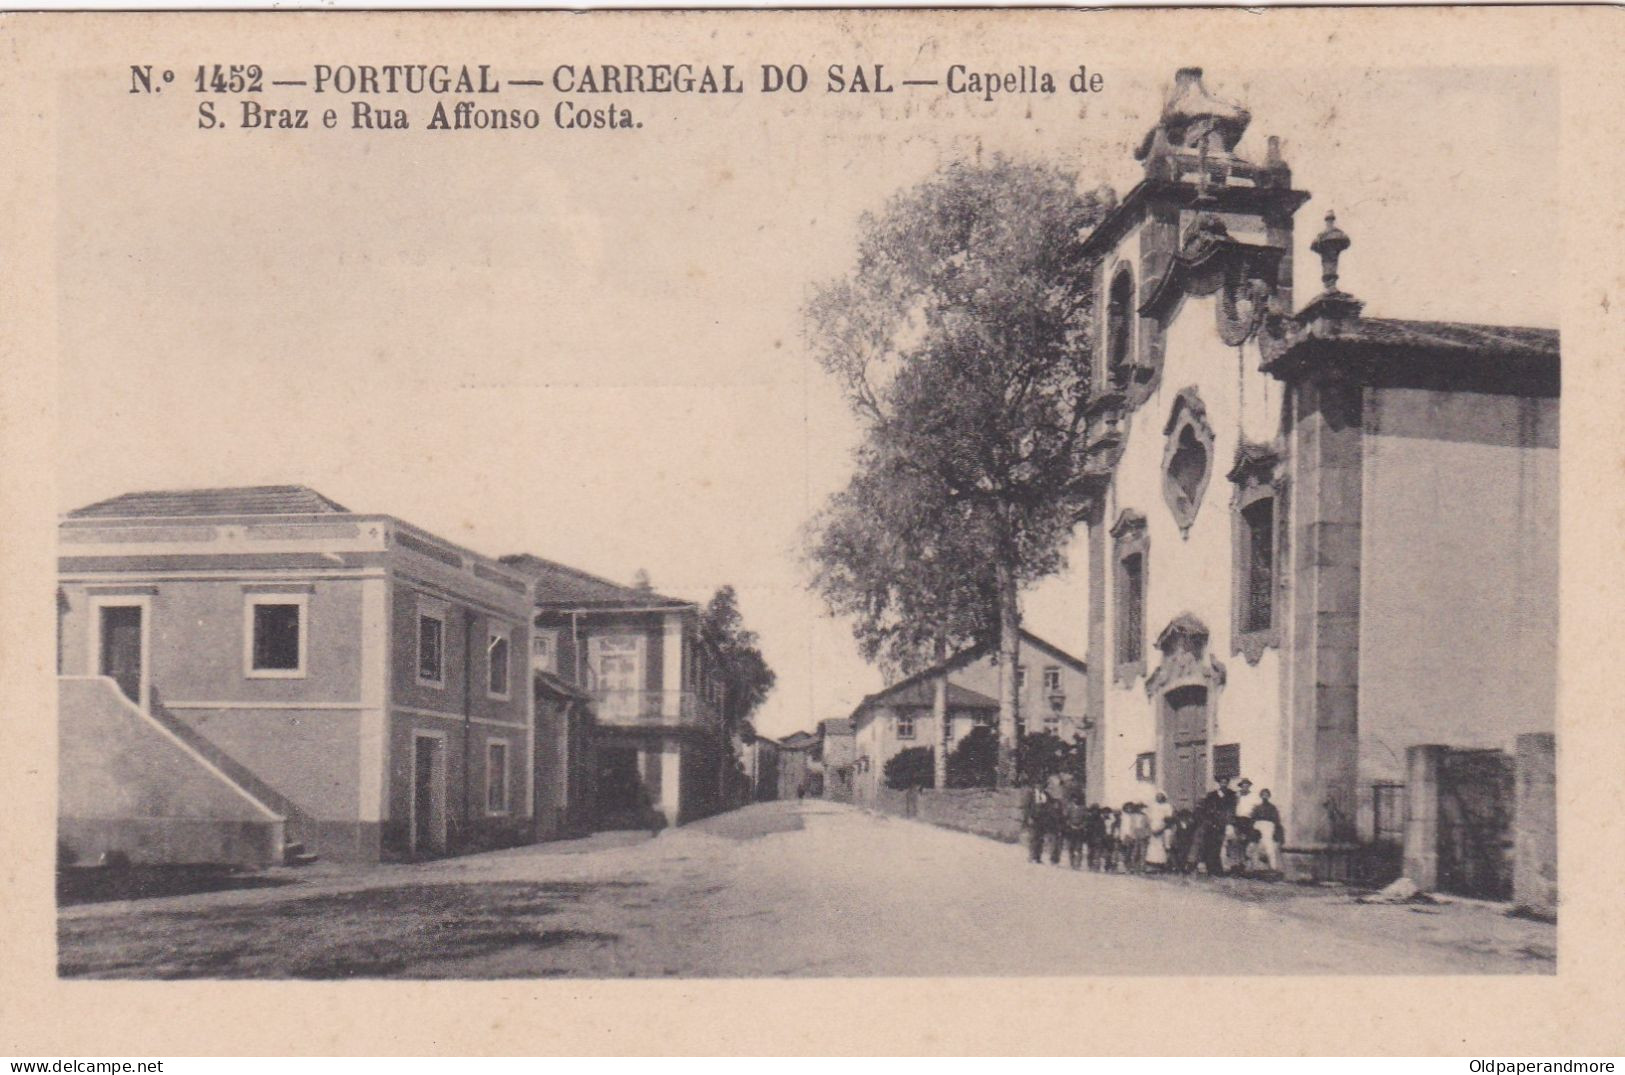 POSTCARD PORTUGAL - CARREGAL DO SAL - CAPELA S. BRÁS E RUA AFONSO COSTA - Viseu